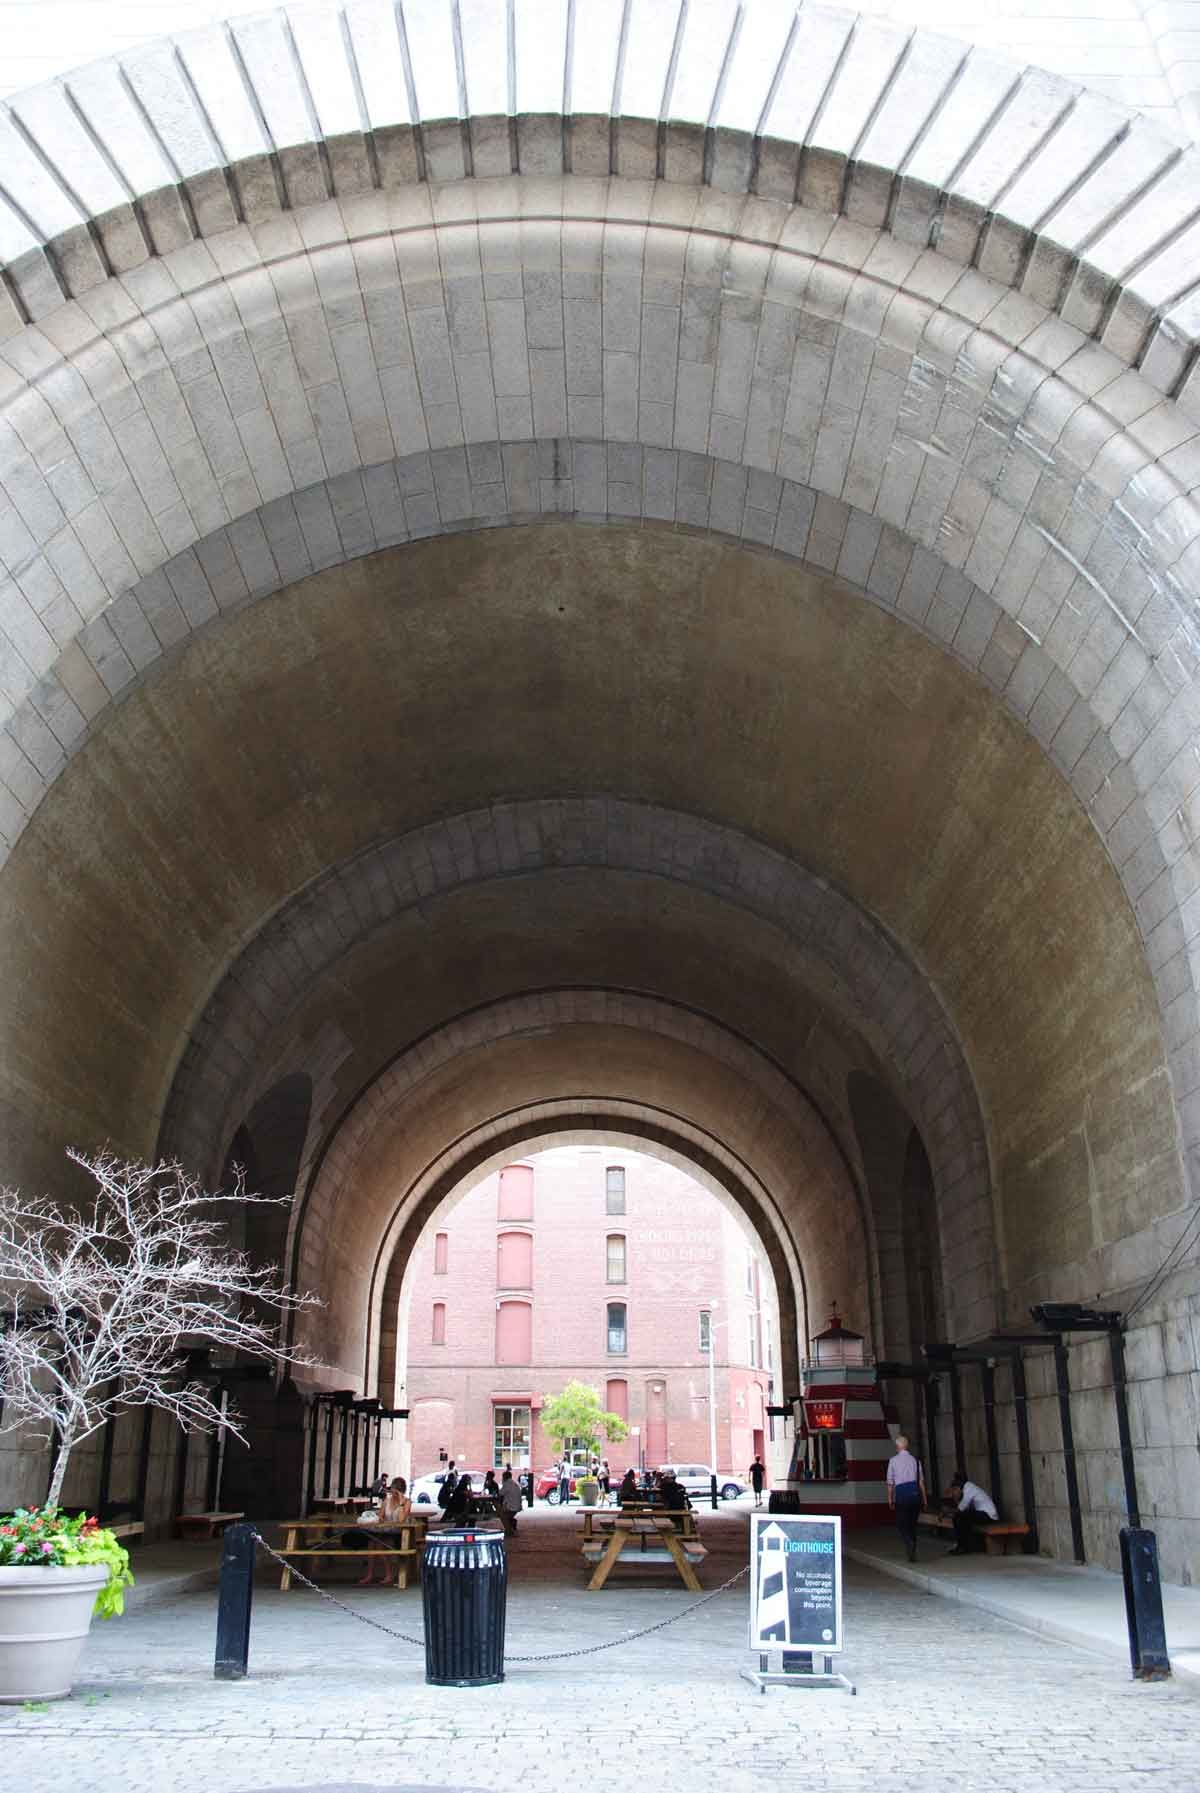 The Archway Under the Manhattan Bridge